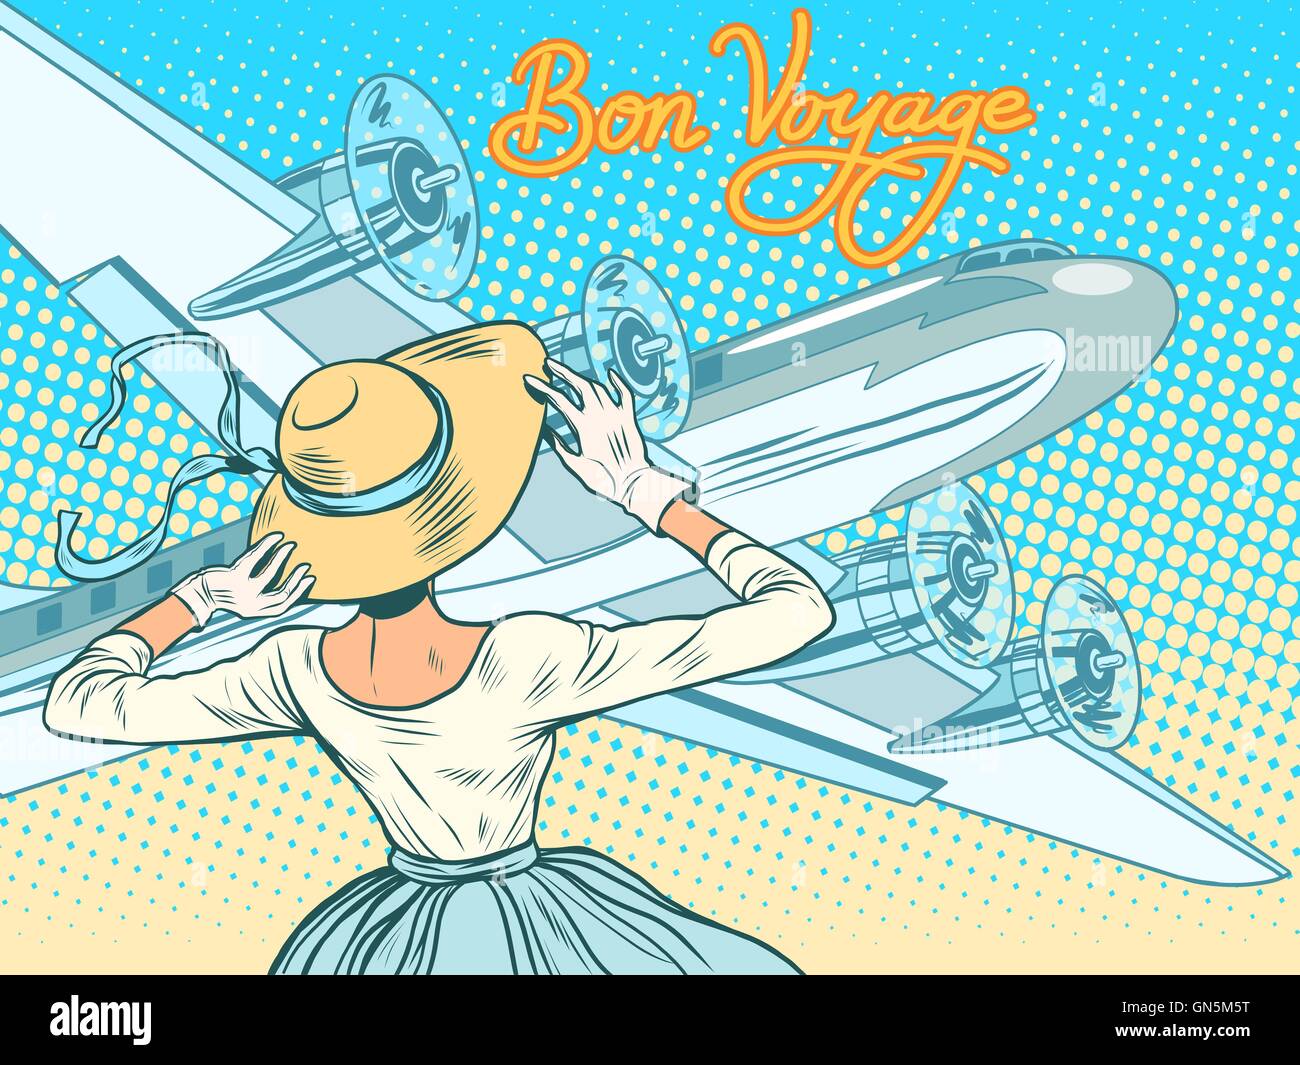 Bon voyage girl escorts aircraft Stock Vector